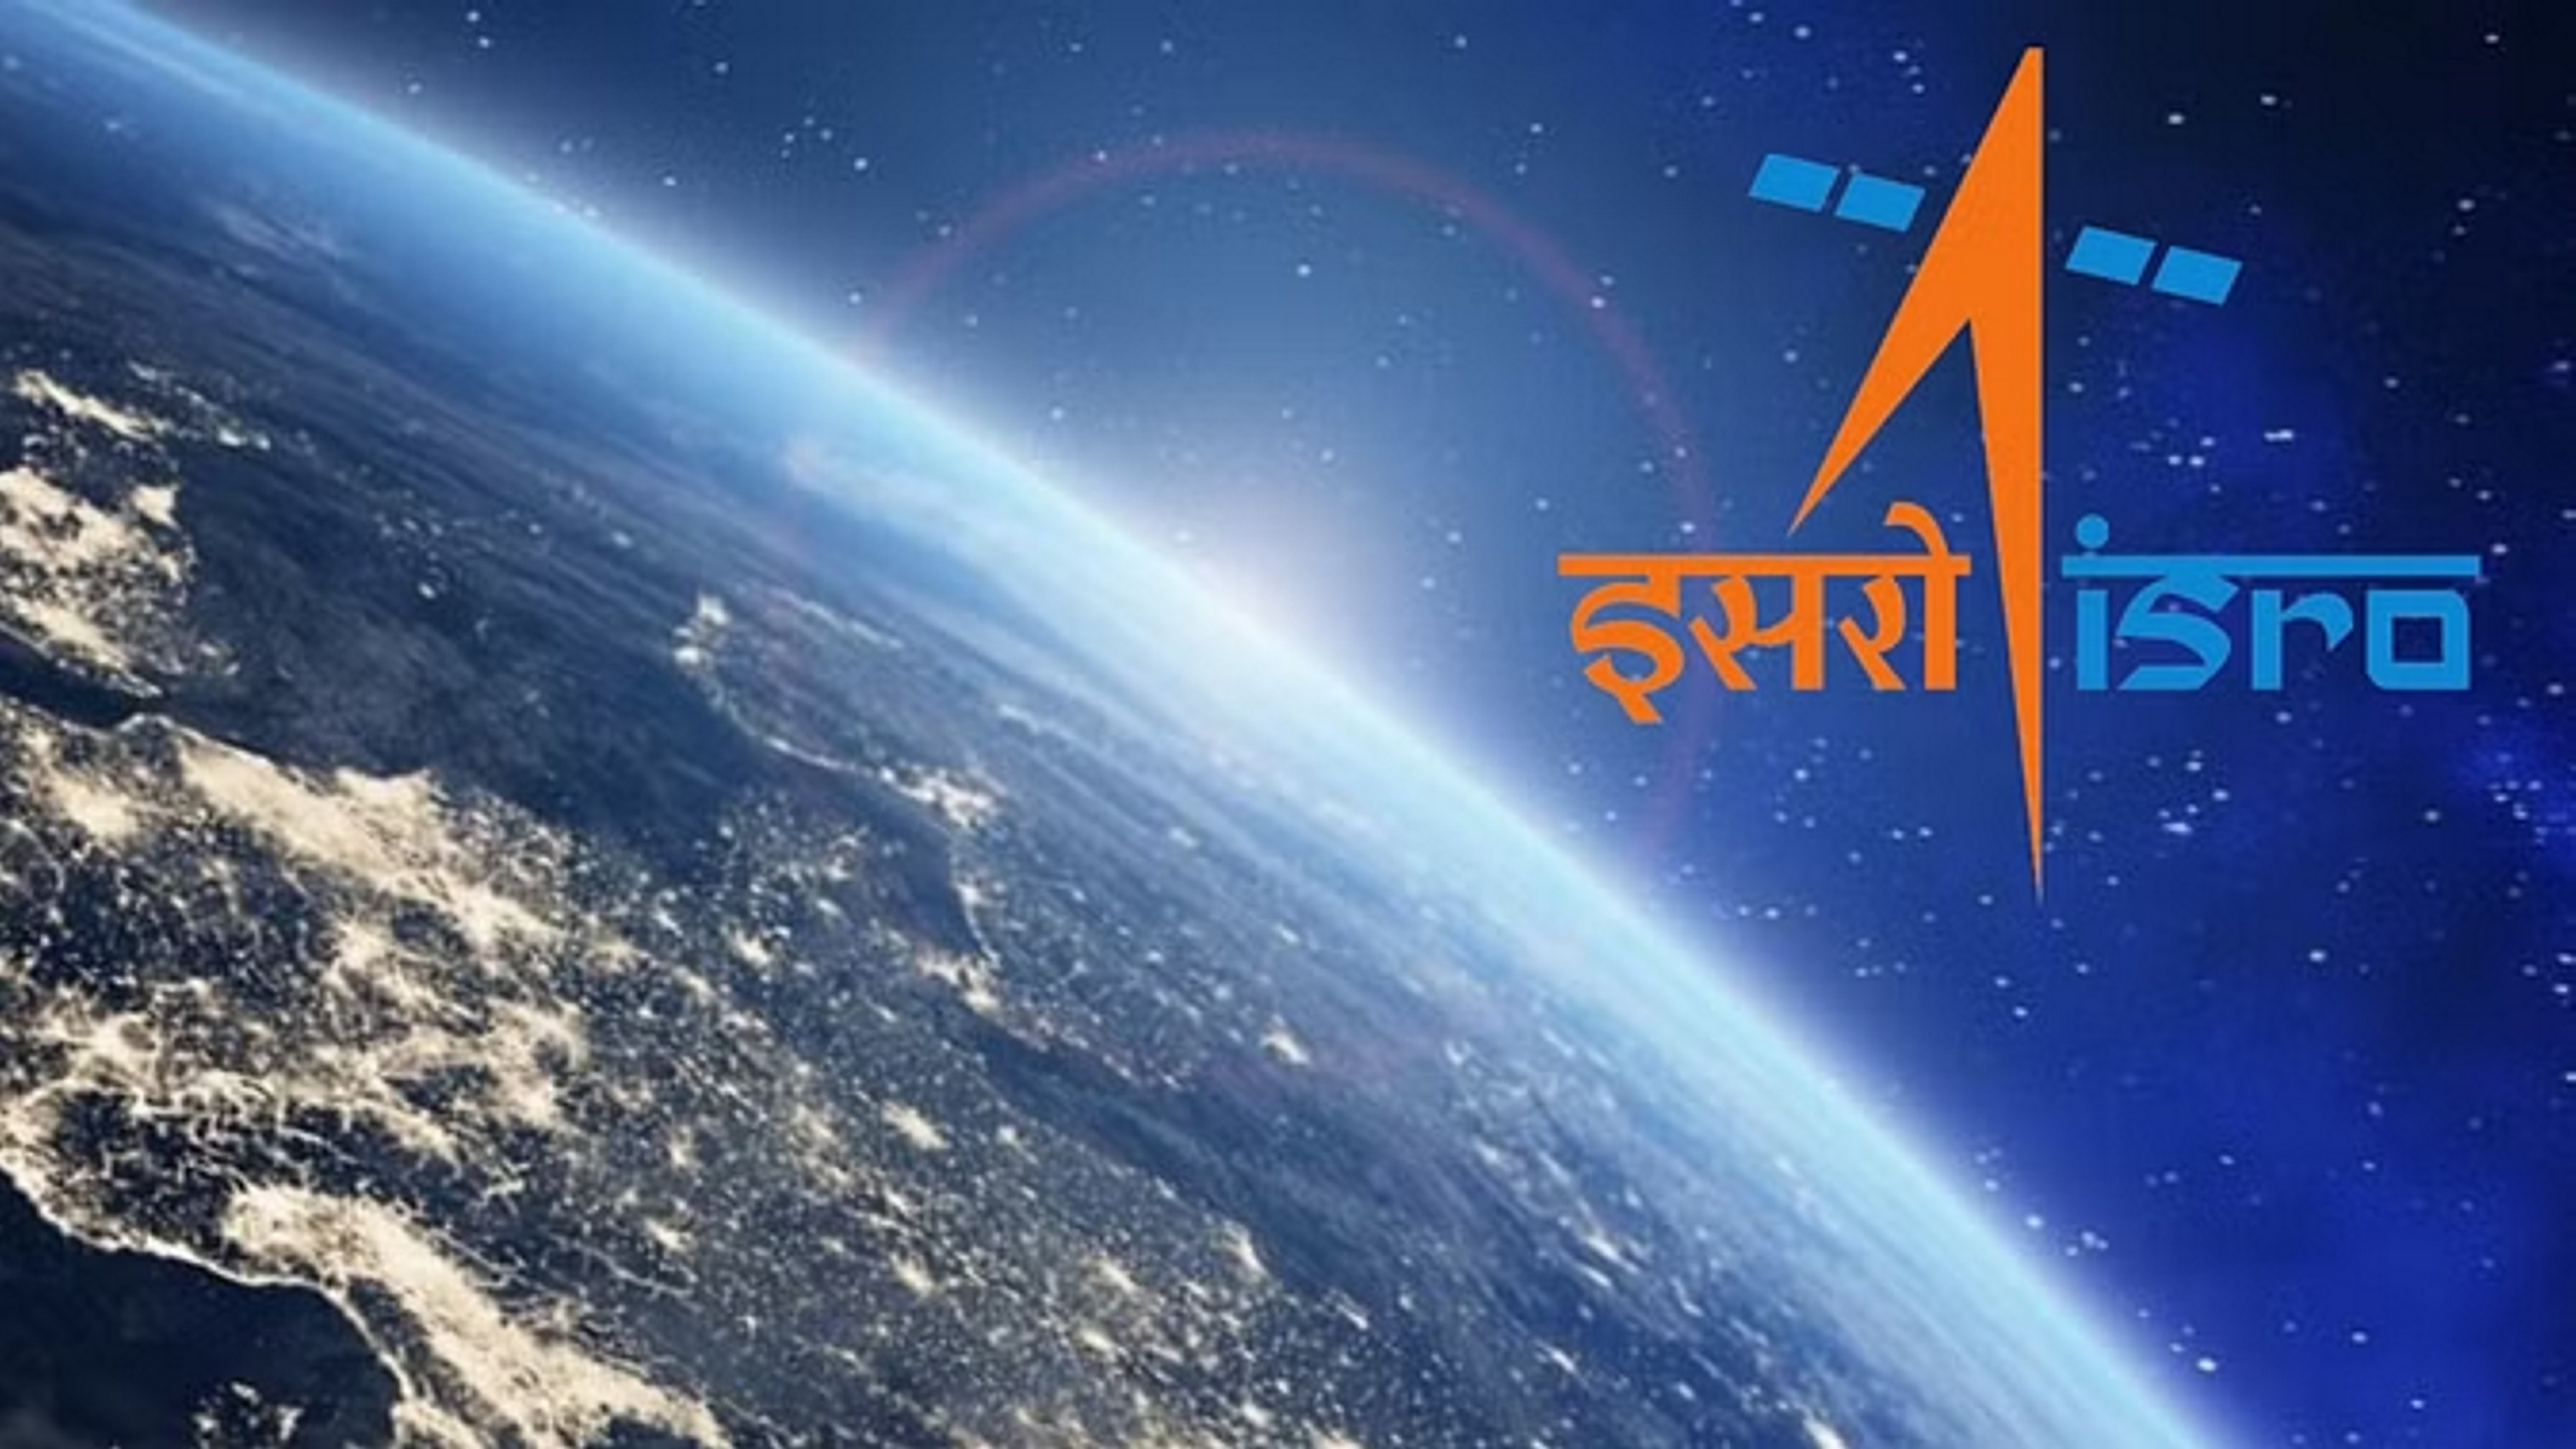 Cartosat-2: 17 साल बाद हिंद महासागर में गिराया गया उपग्रह